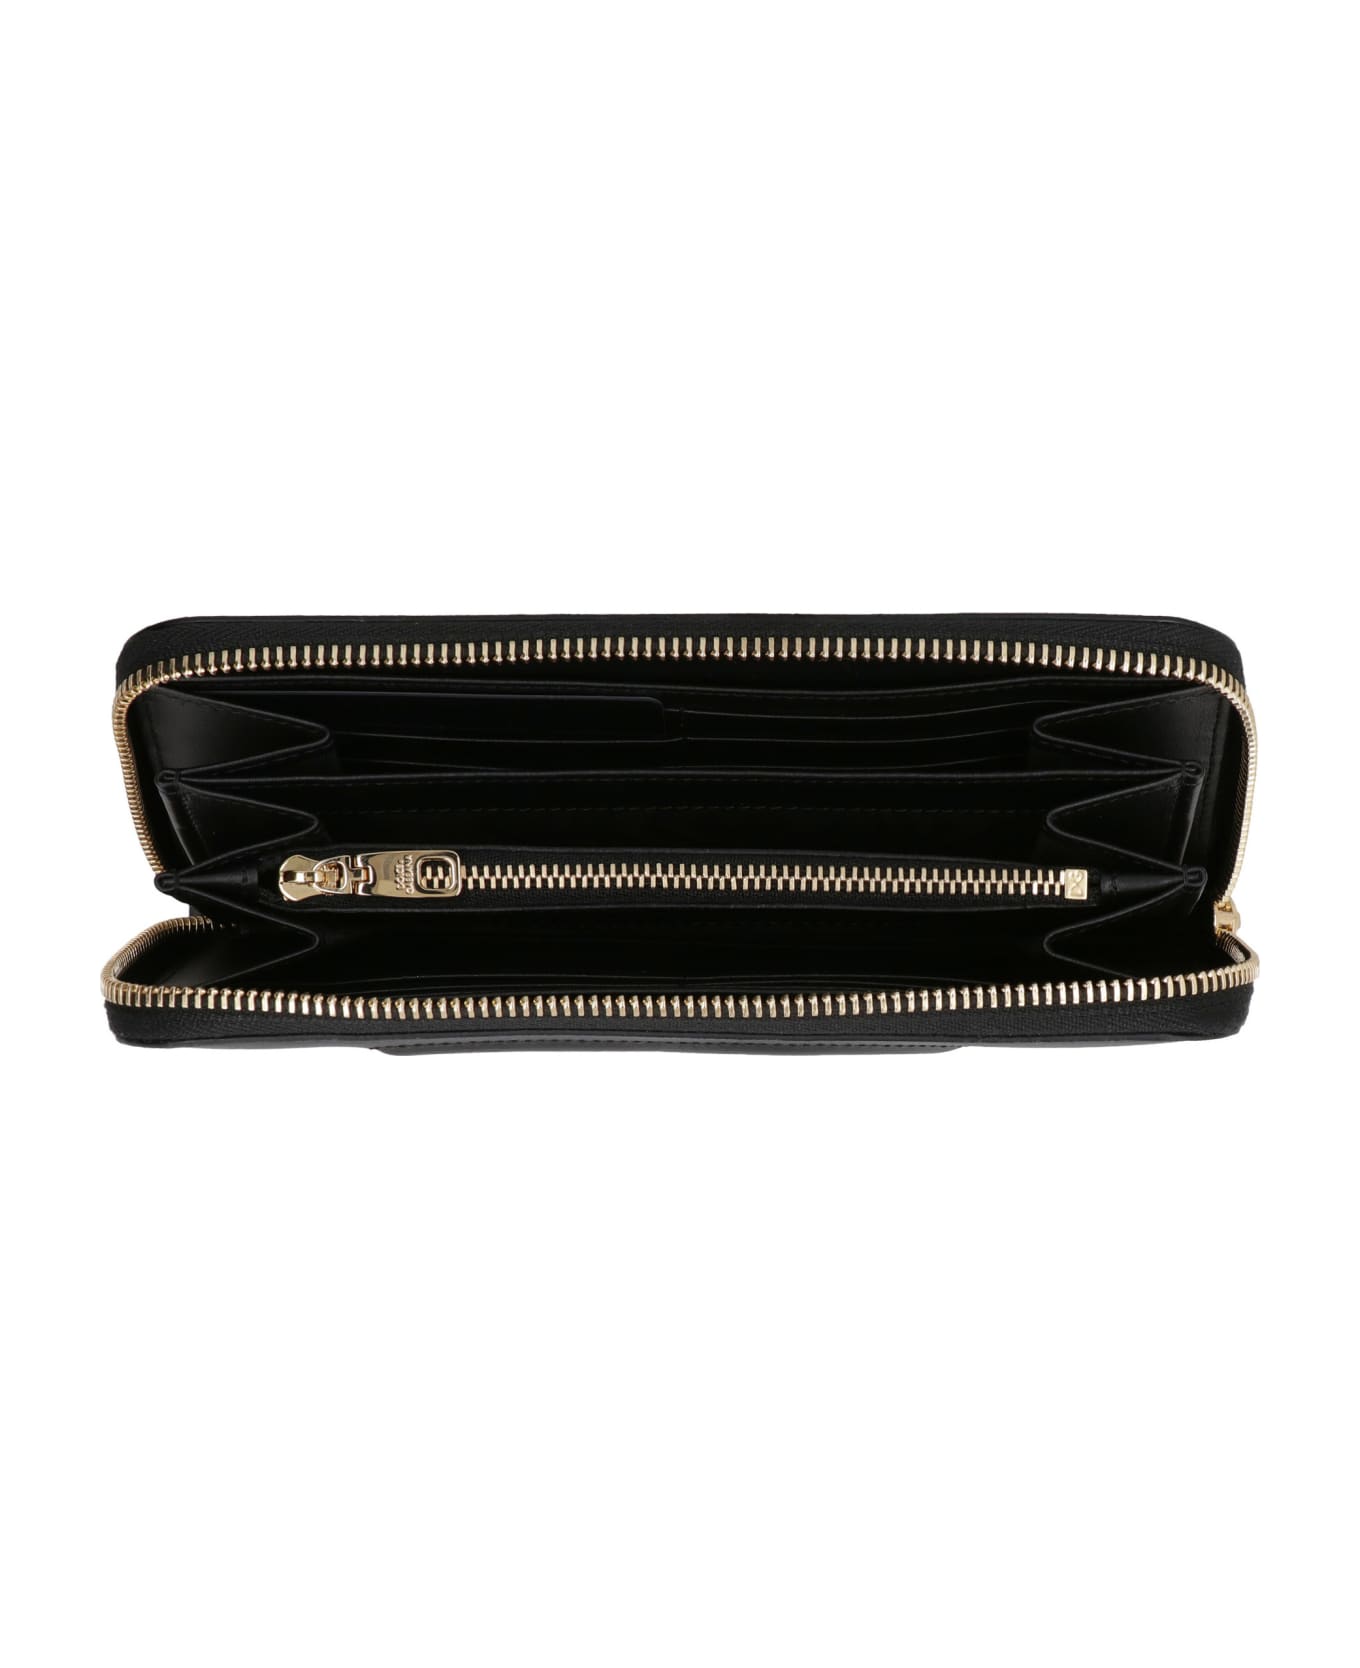 Dolce & Gabbana Dg Logo Leather Zip-around Wallet - black